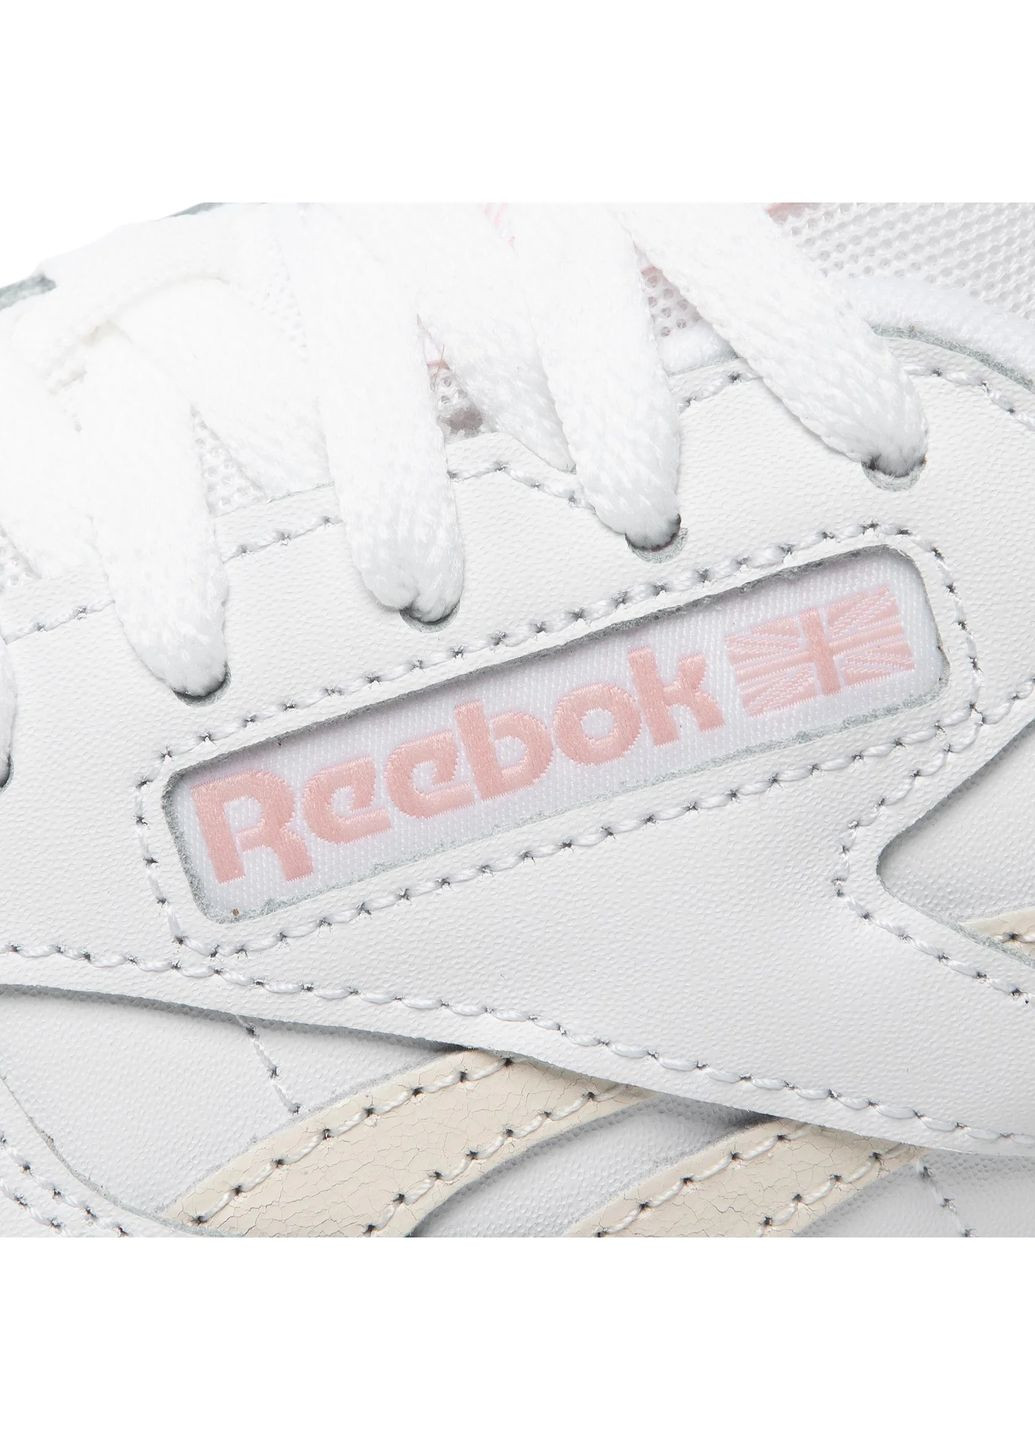 Белые демисезонные кроссовки Reebok Classic Leather Sp GX8689